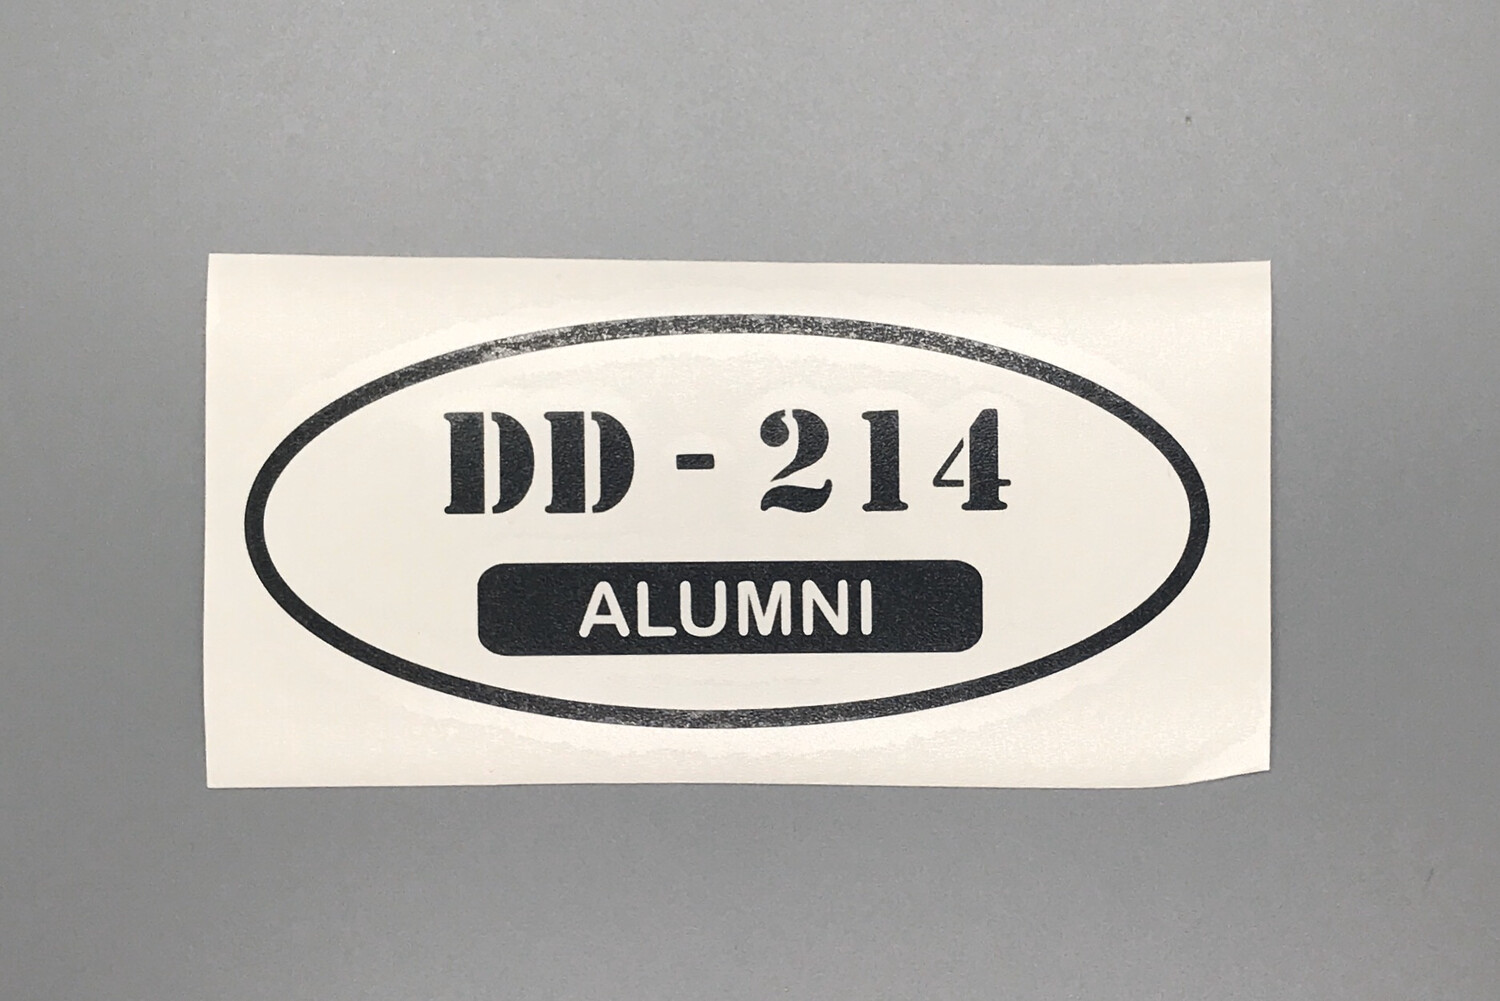 DD-214 Alumni Decal